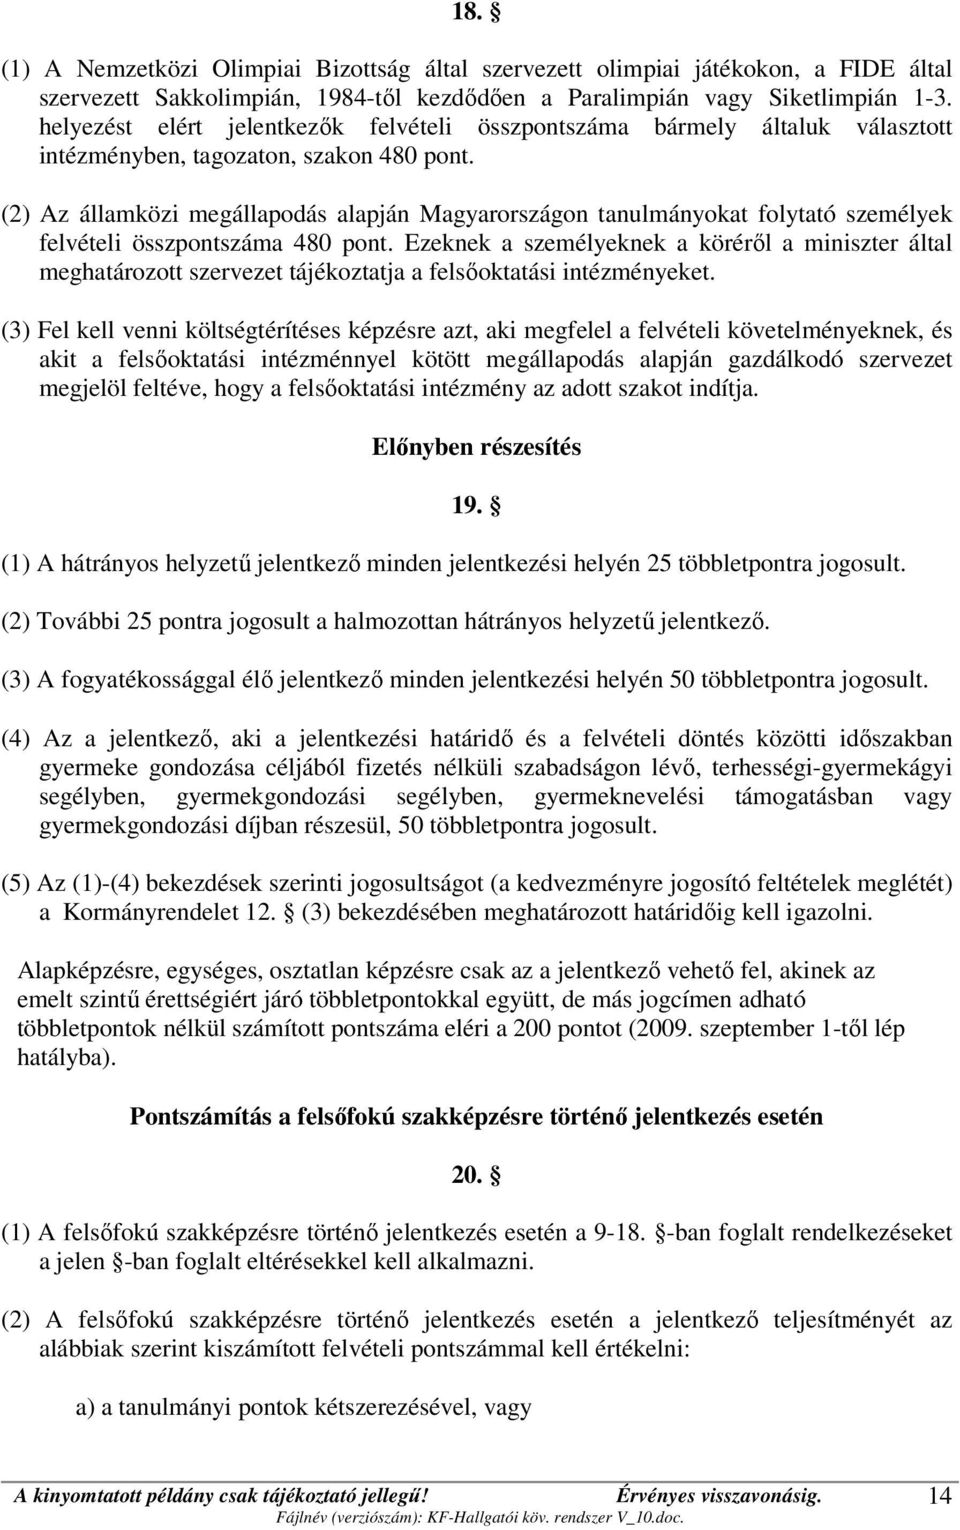 (2) Az államközi megállapodás alapján Magyarországon tanulmányokat folytató személyek felvételi összpontszáma 480 pont.